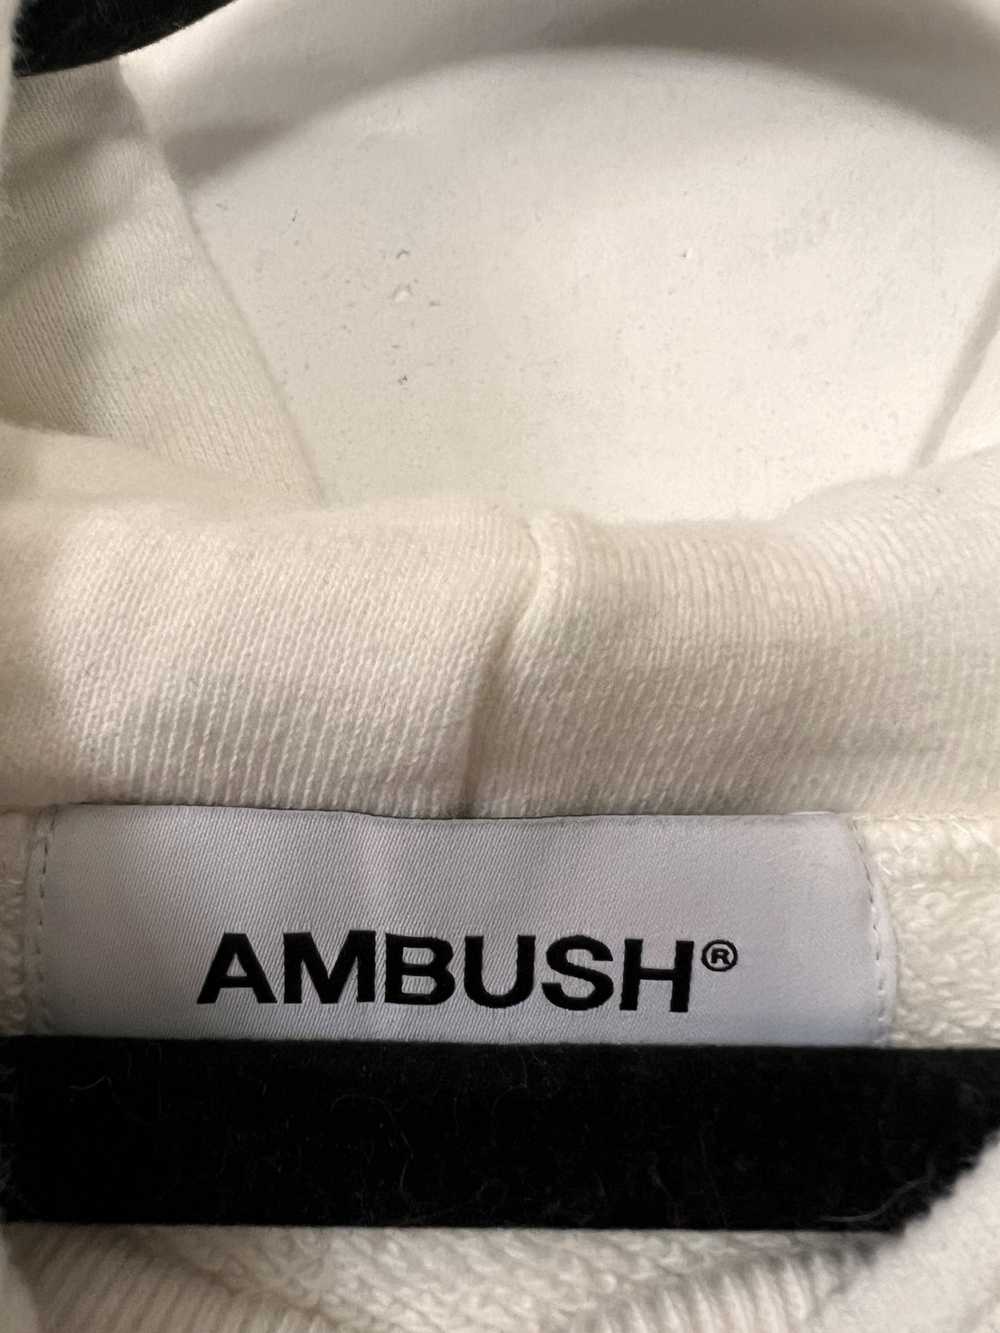 Amazon × Ambush Design AMAZON × AMBUSH TAPED DESI… - image 7